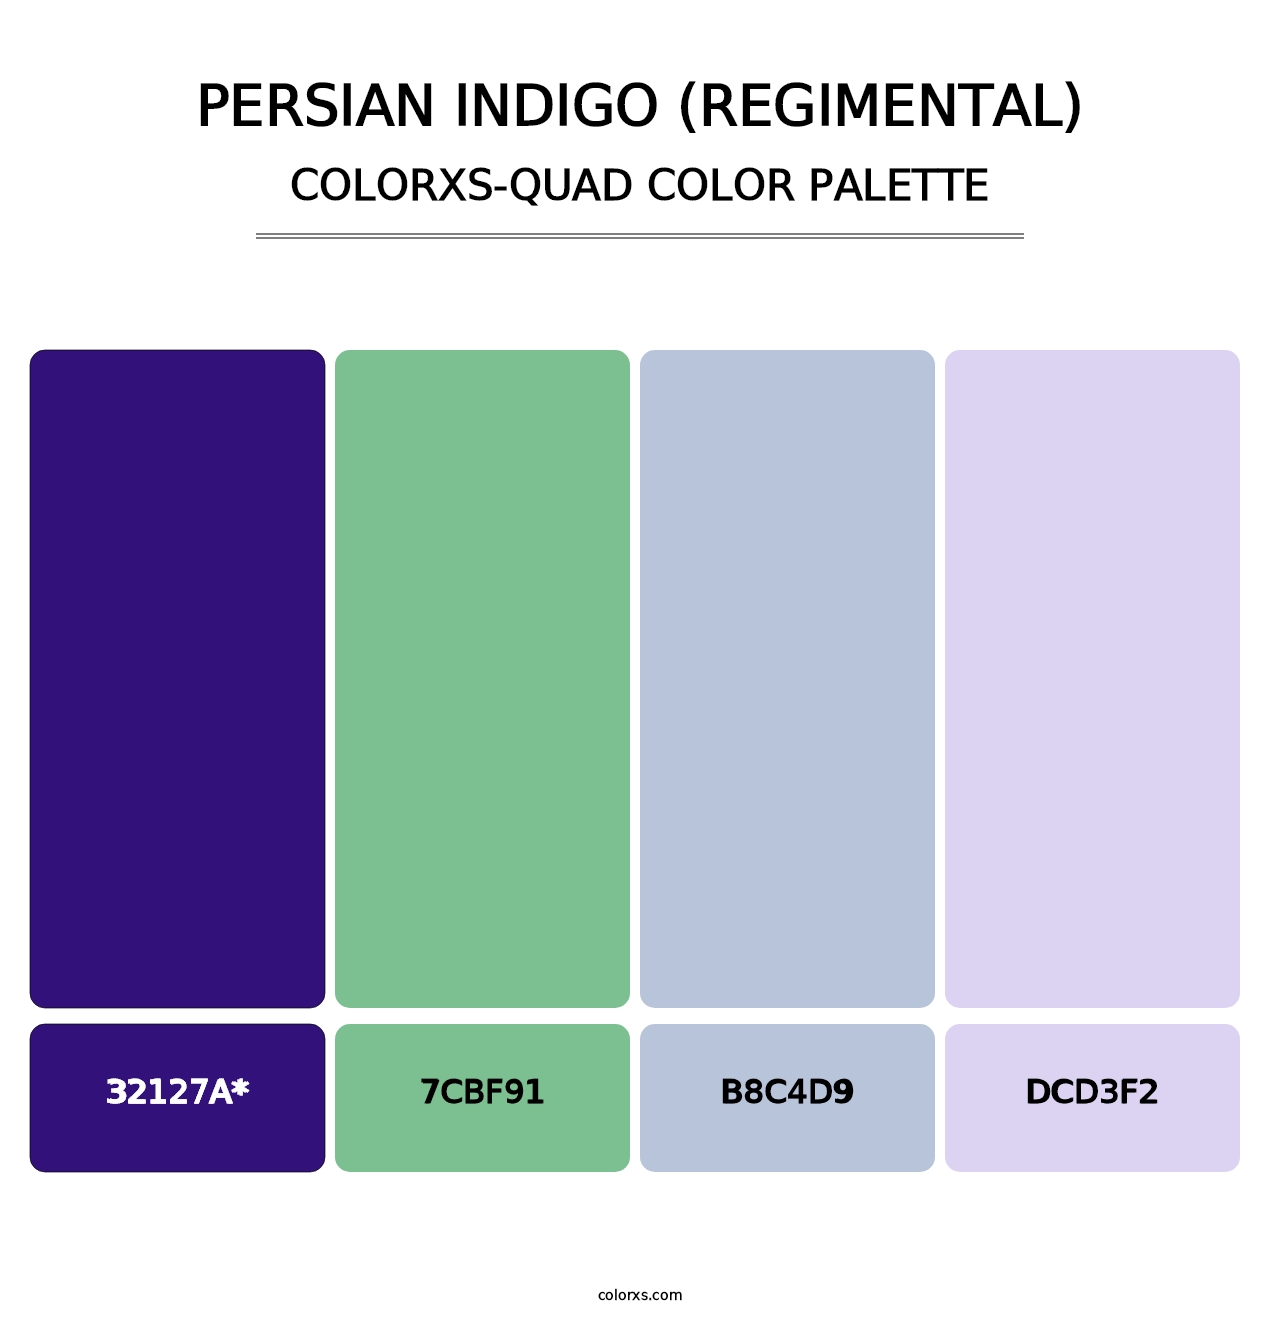 Persian Indigo (Regimental) - Colorxs Quad Palette